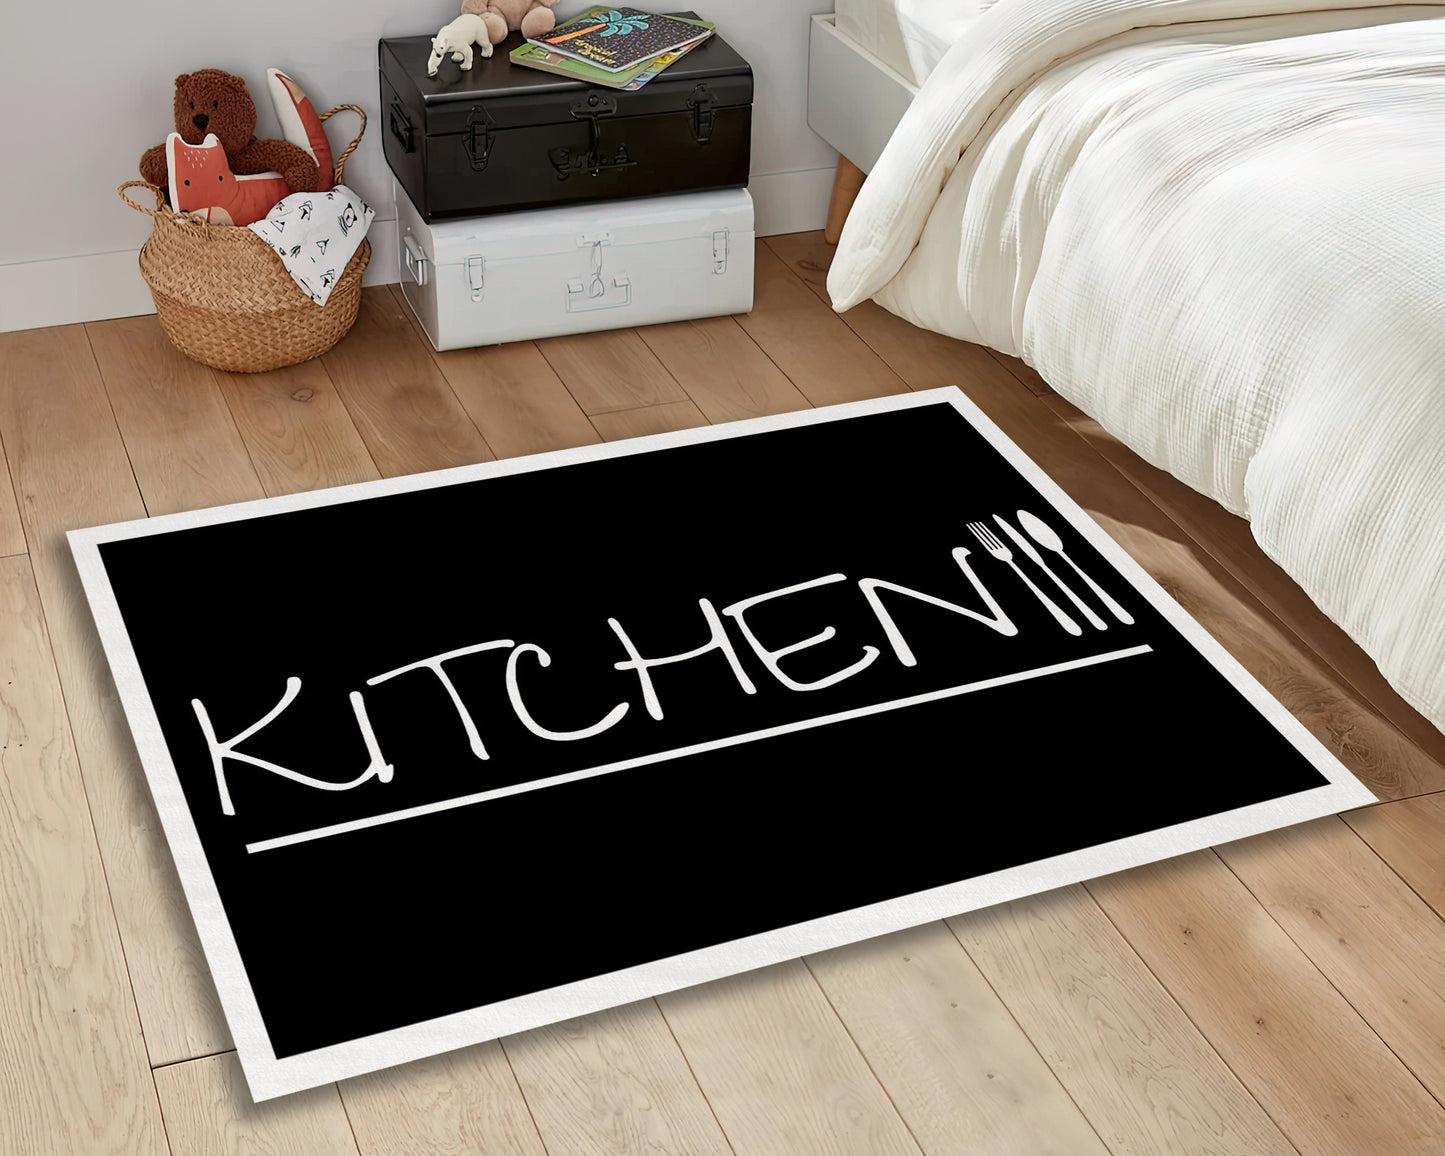 Black Kitchen Text Rug, Kitchen Stuff Carpet, Decorative Kitchen Runner Decor, Cooking Mat